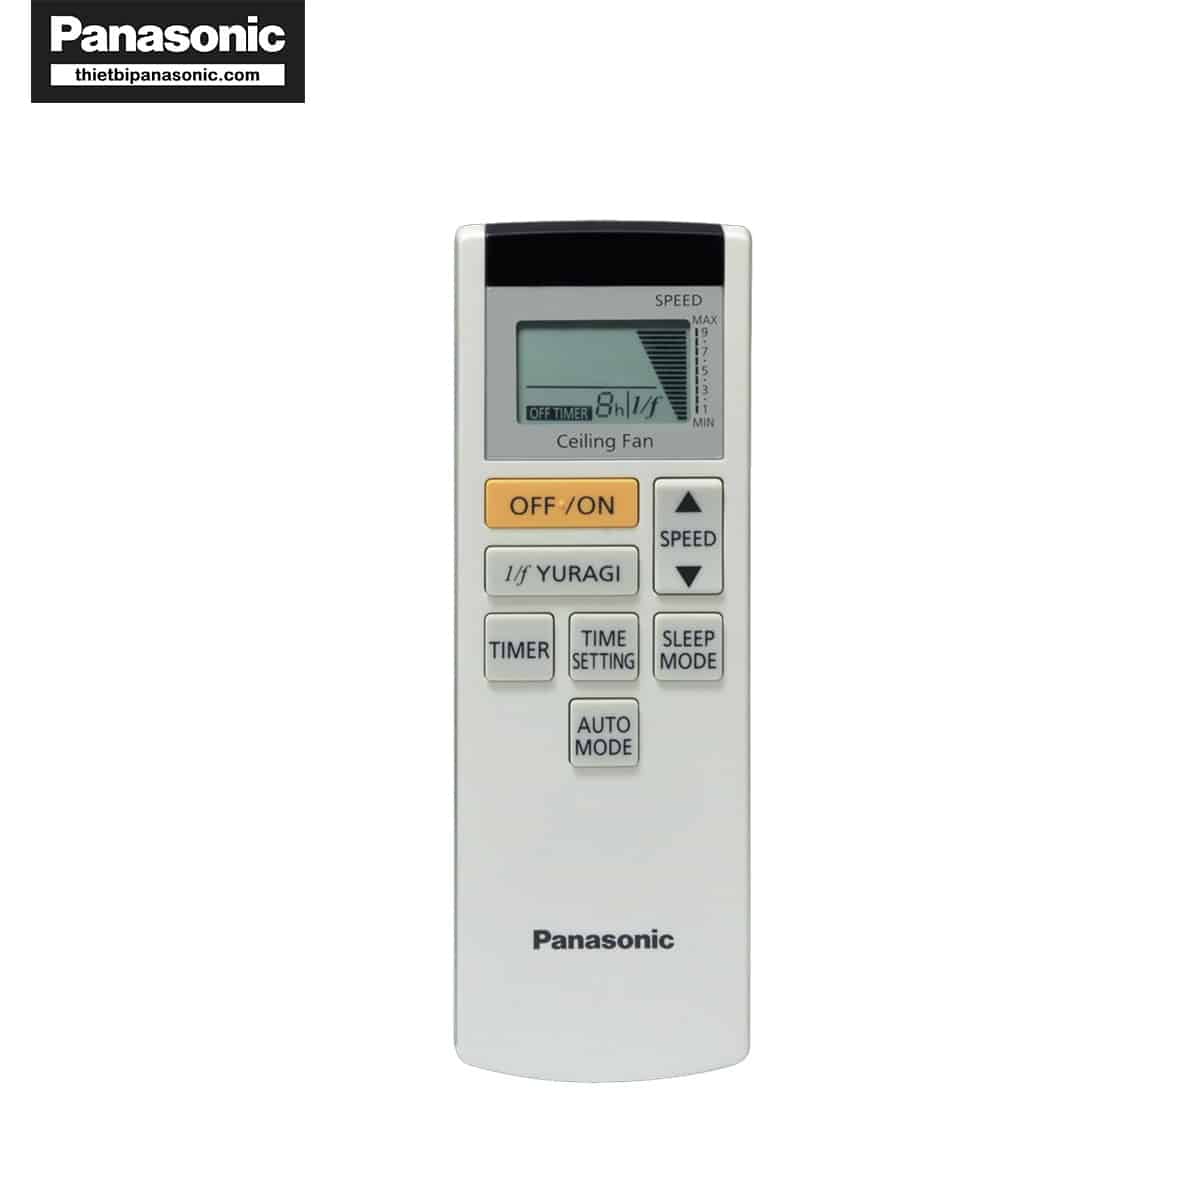 Remote điều khiển Quạt trần Panasonic F-60FEN được tích hợp nhiều phím chức năng cùng màn hình LCD dễ thao tác sử dụng